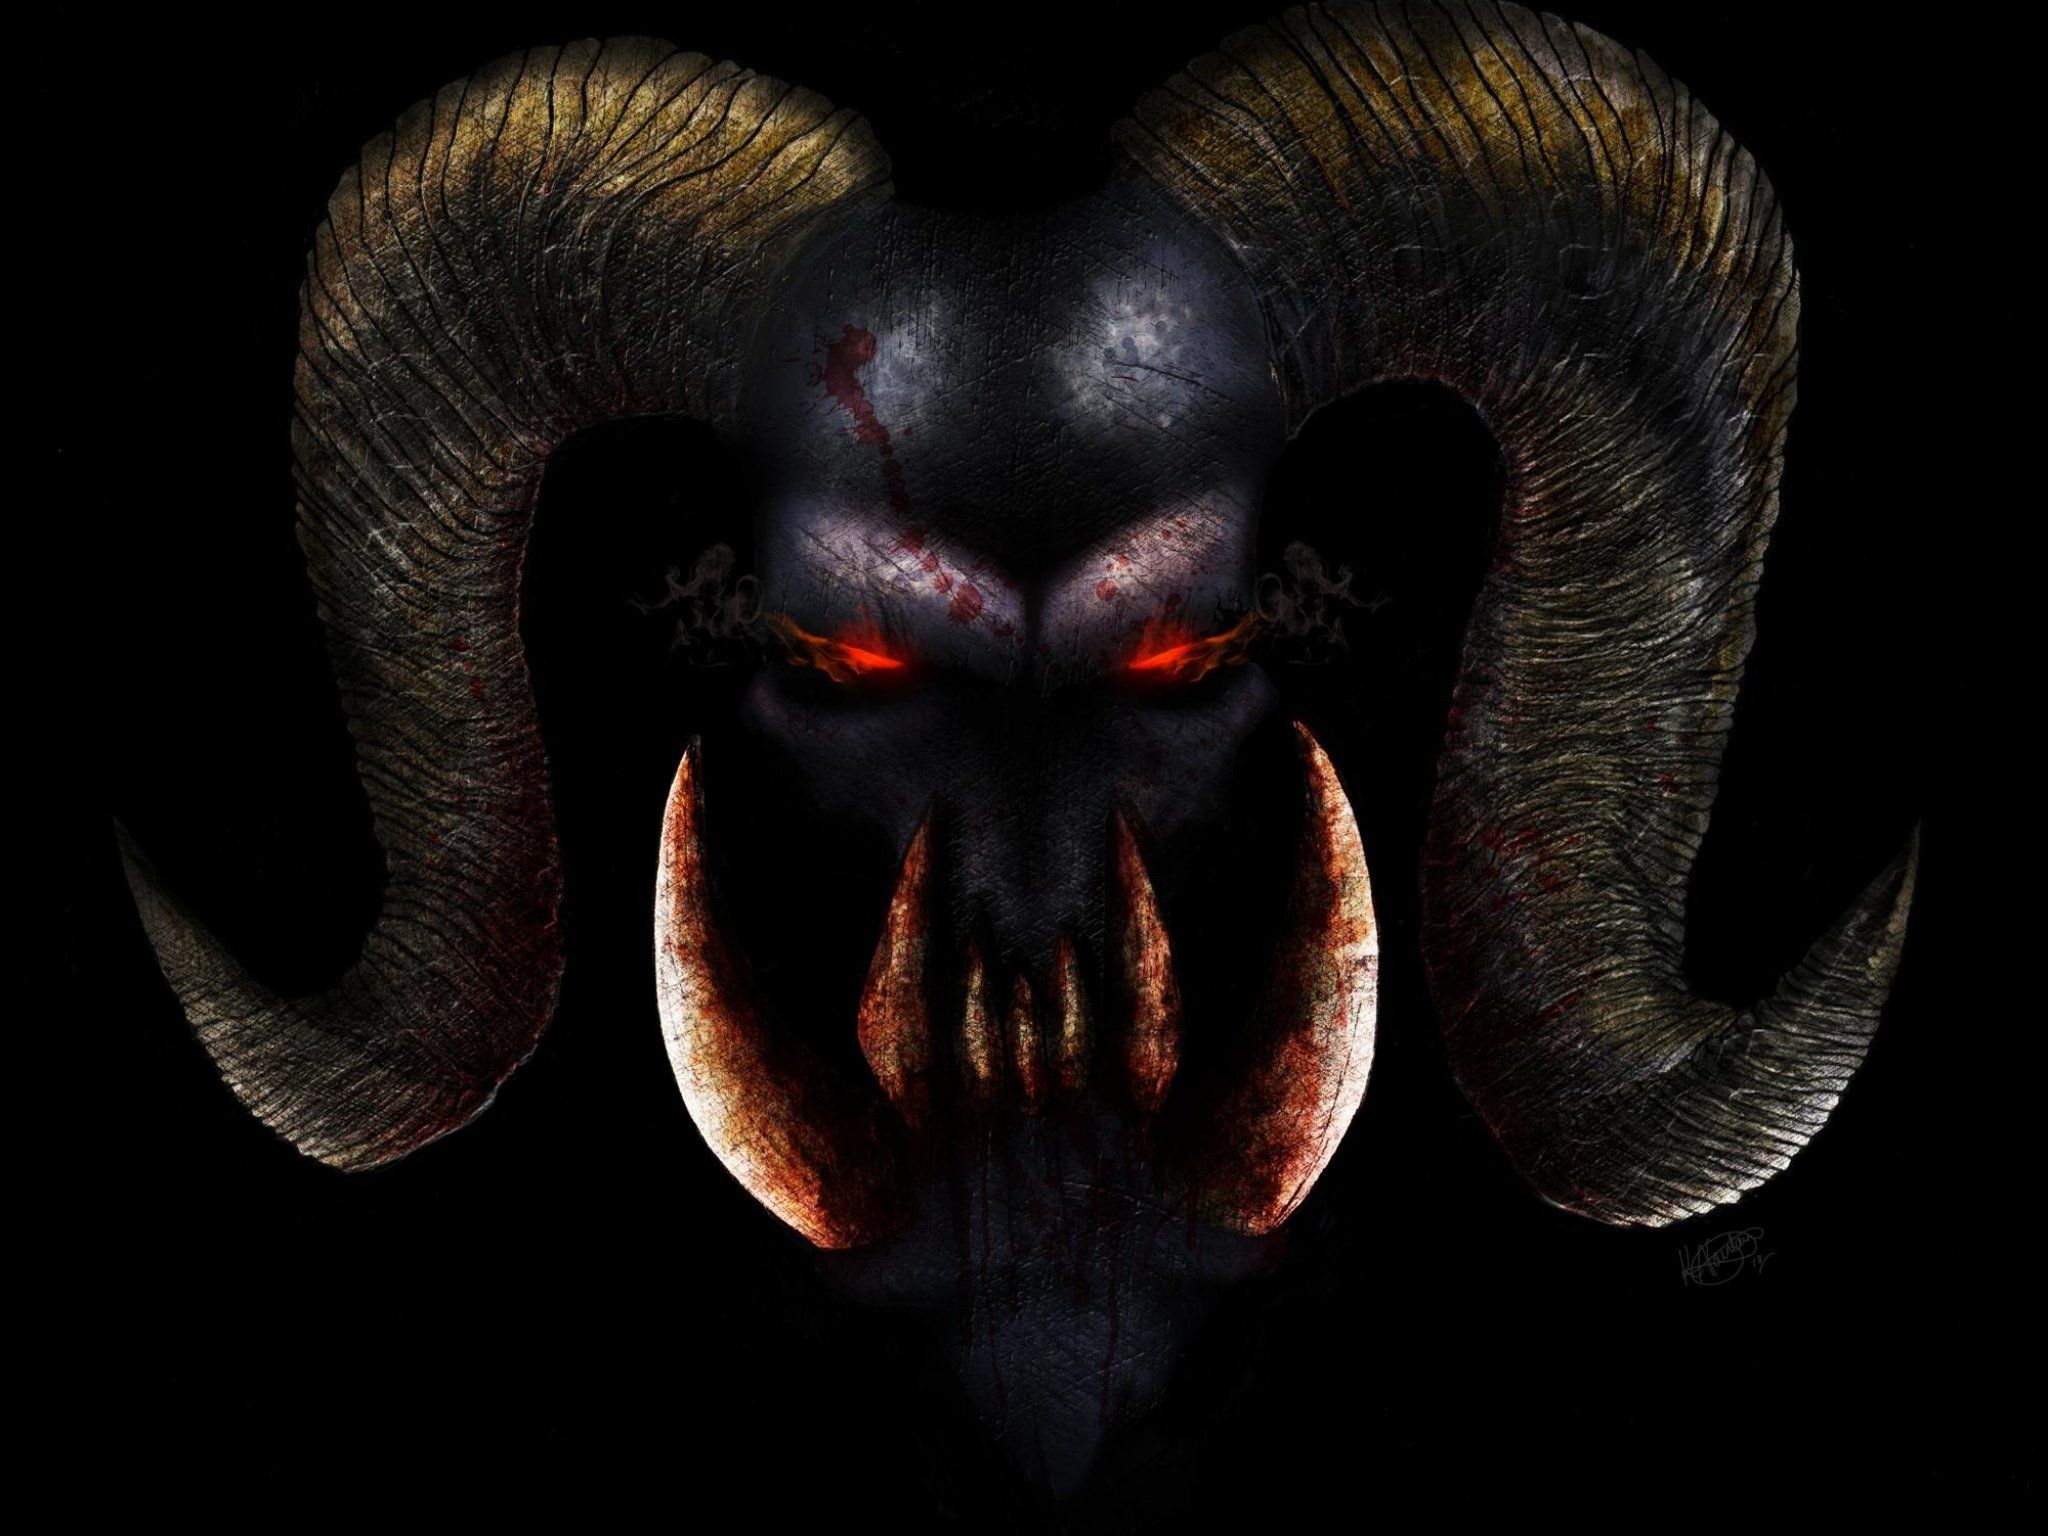 Demon Evil Dark Horror Fantasy Monster Art Artwork Face